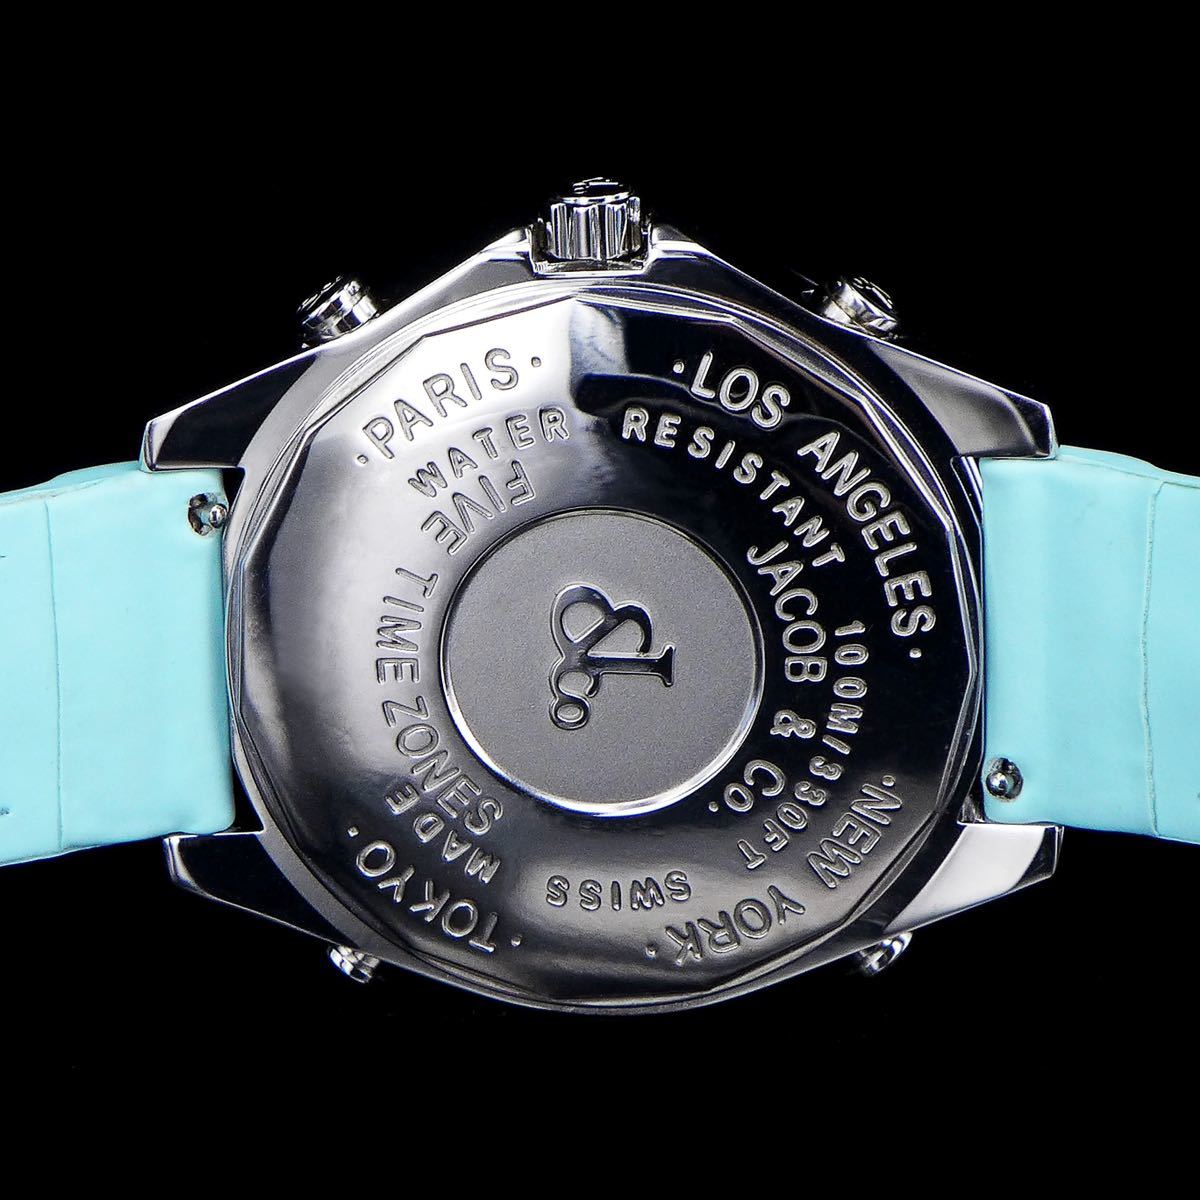 Jacob&Co Jacob Supreme Supreme 4 часовой пояс белый циферблат 47mm бриллиант нержавеющая сталь голубой ремень наручные часы мужской 